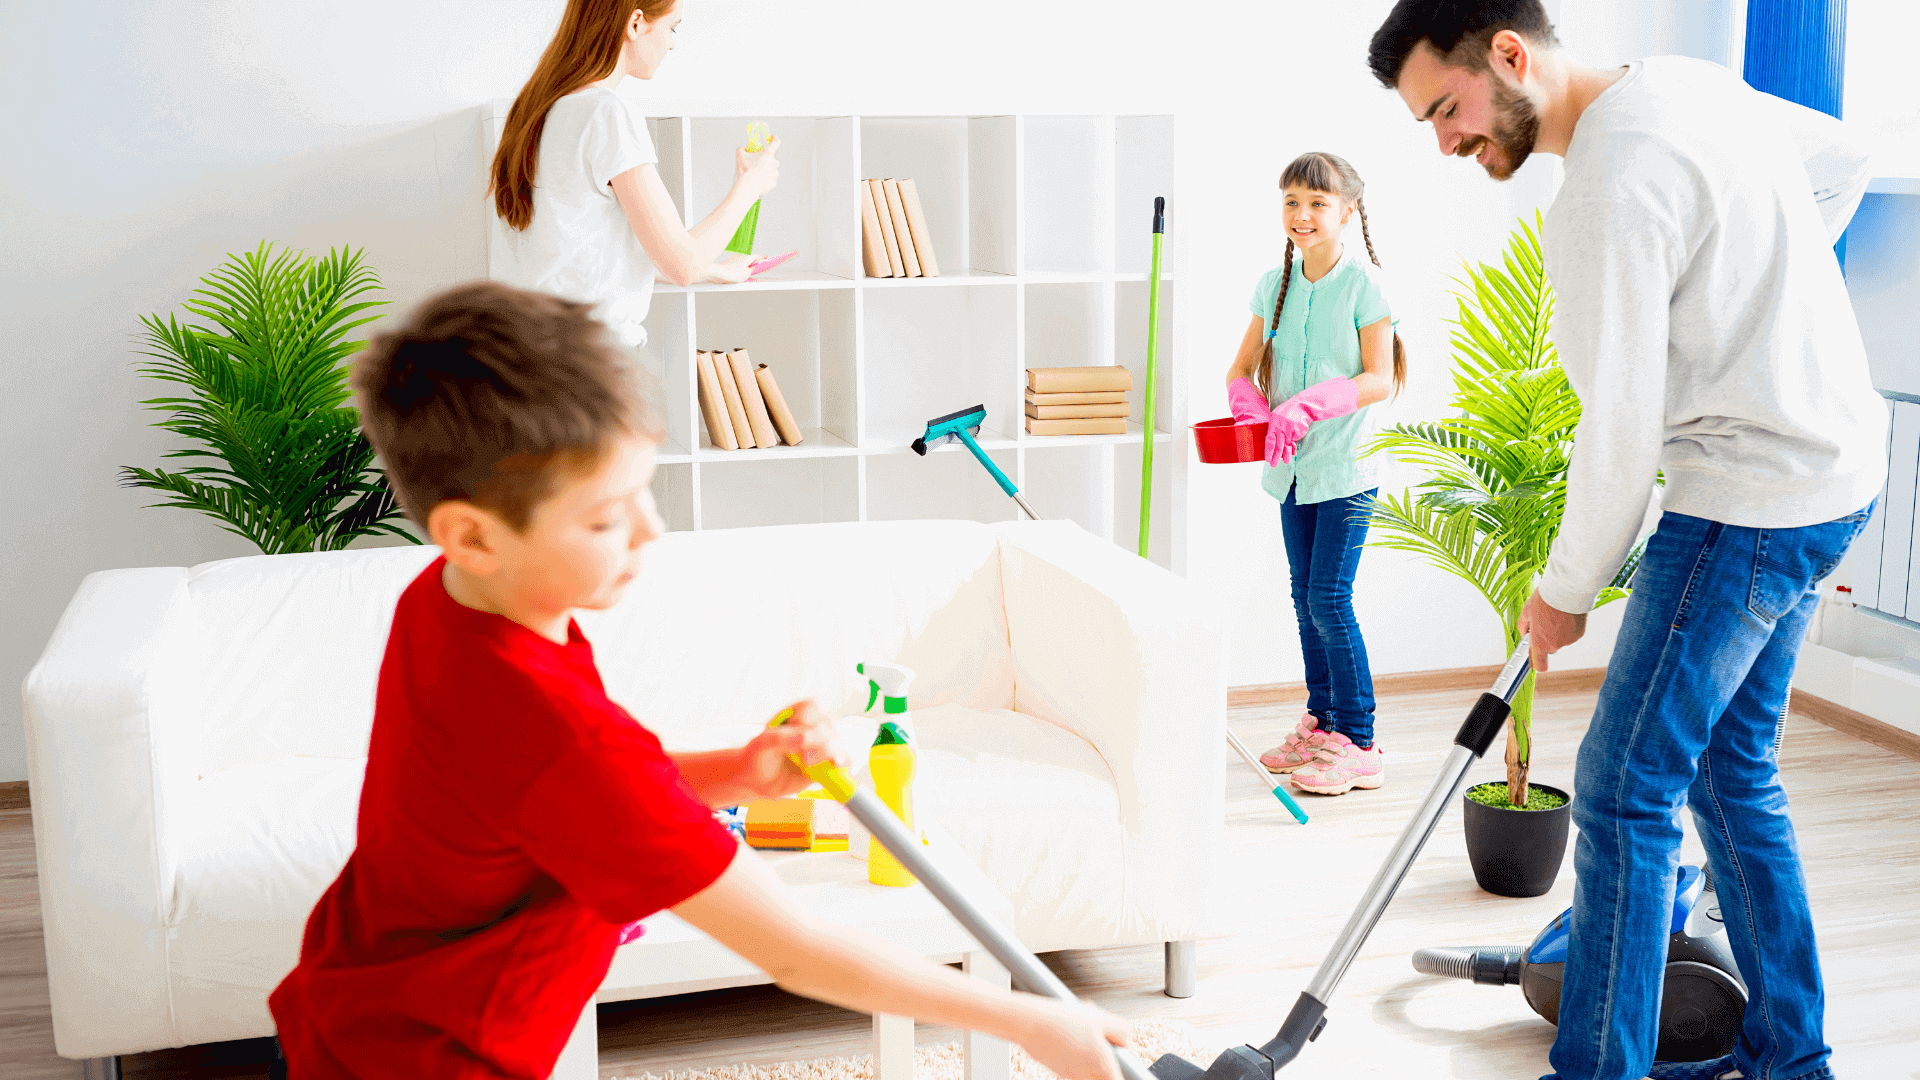 a fun activity can involve a fun house chores activity